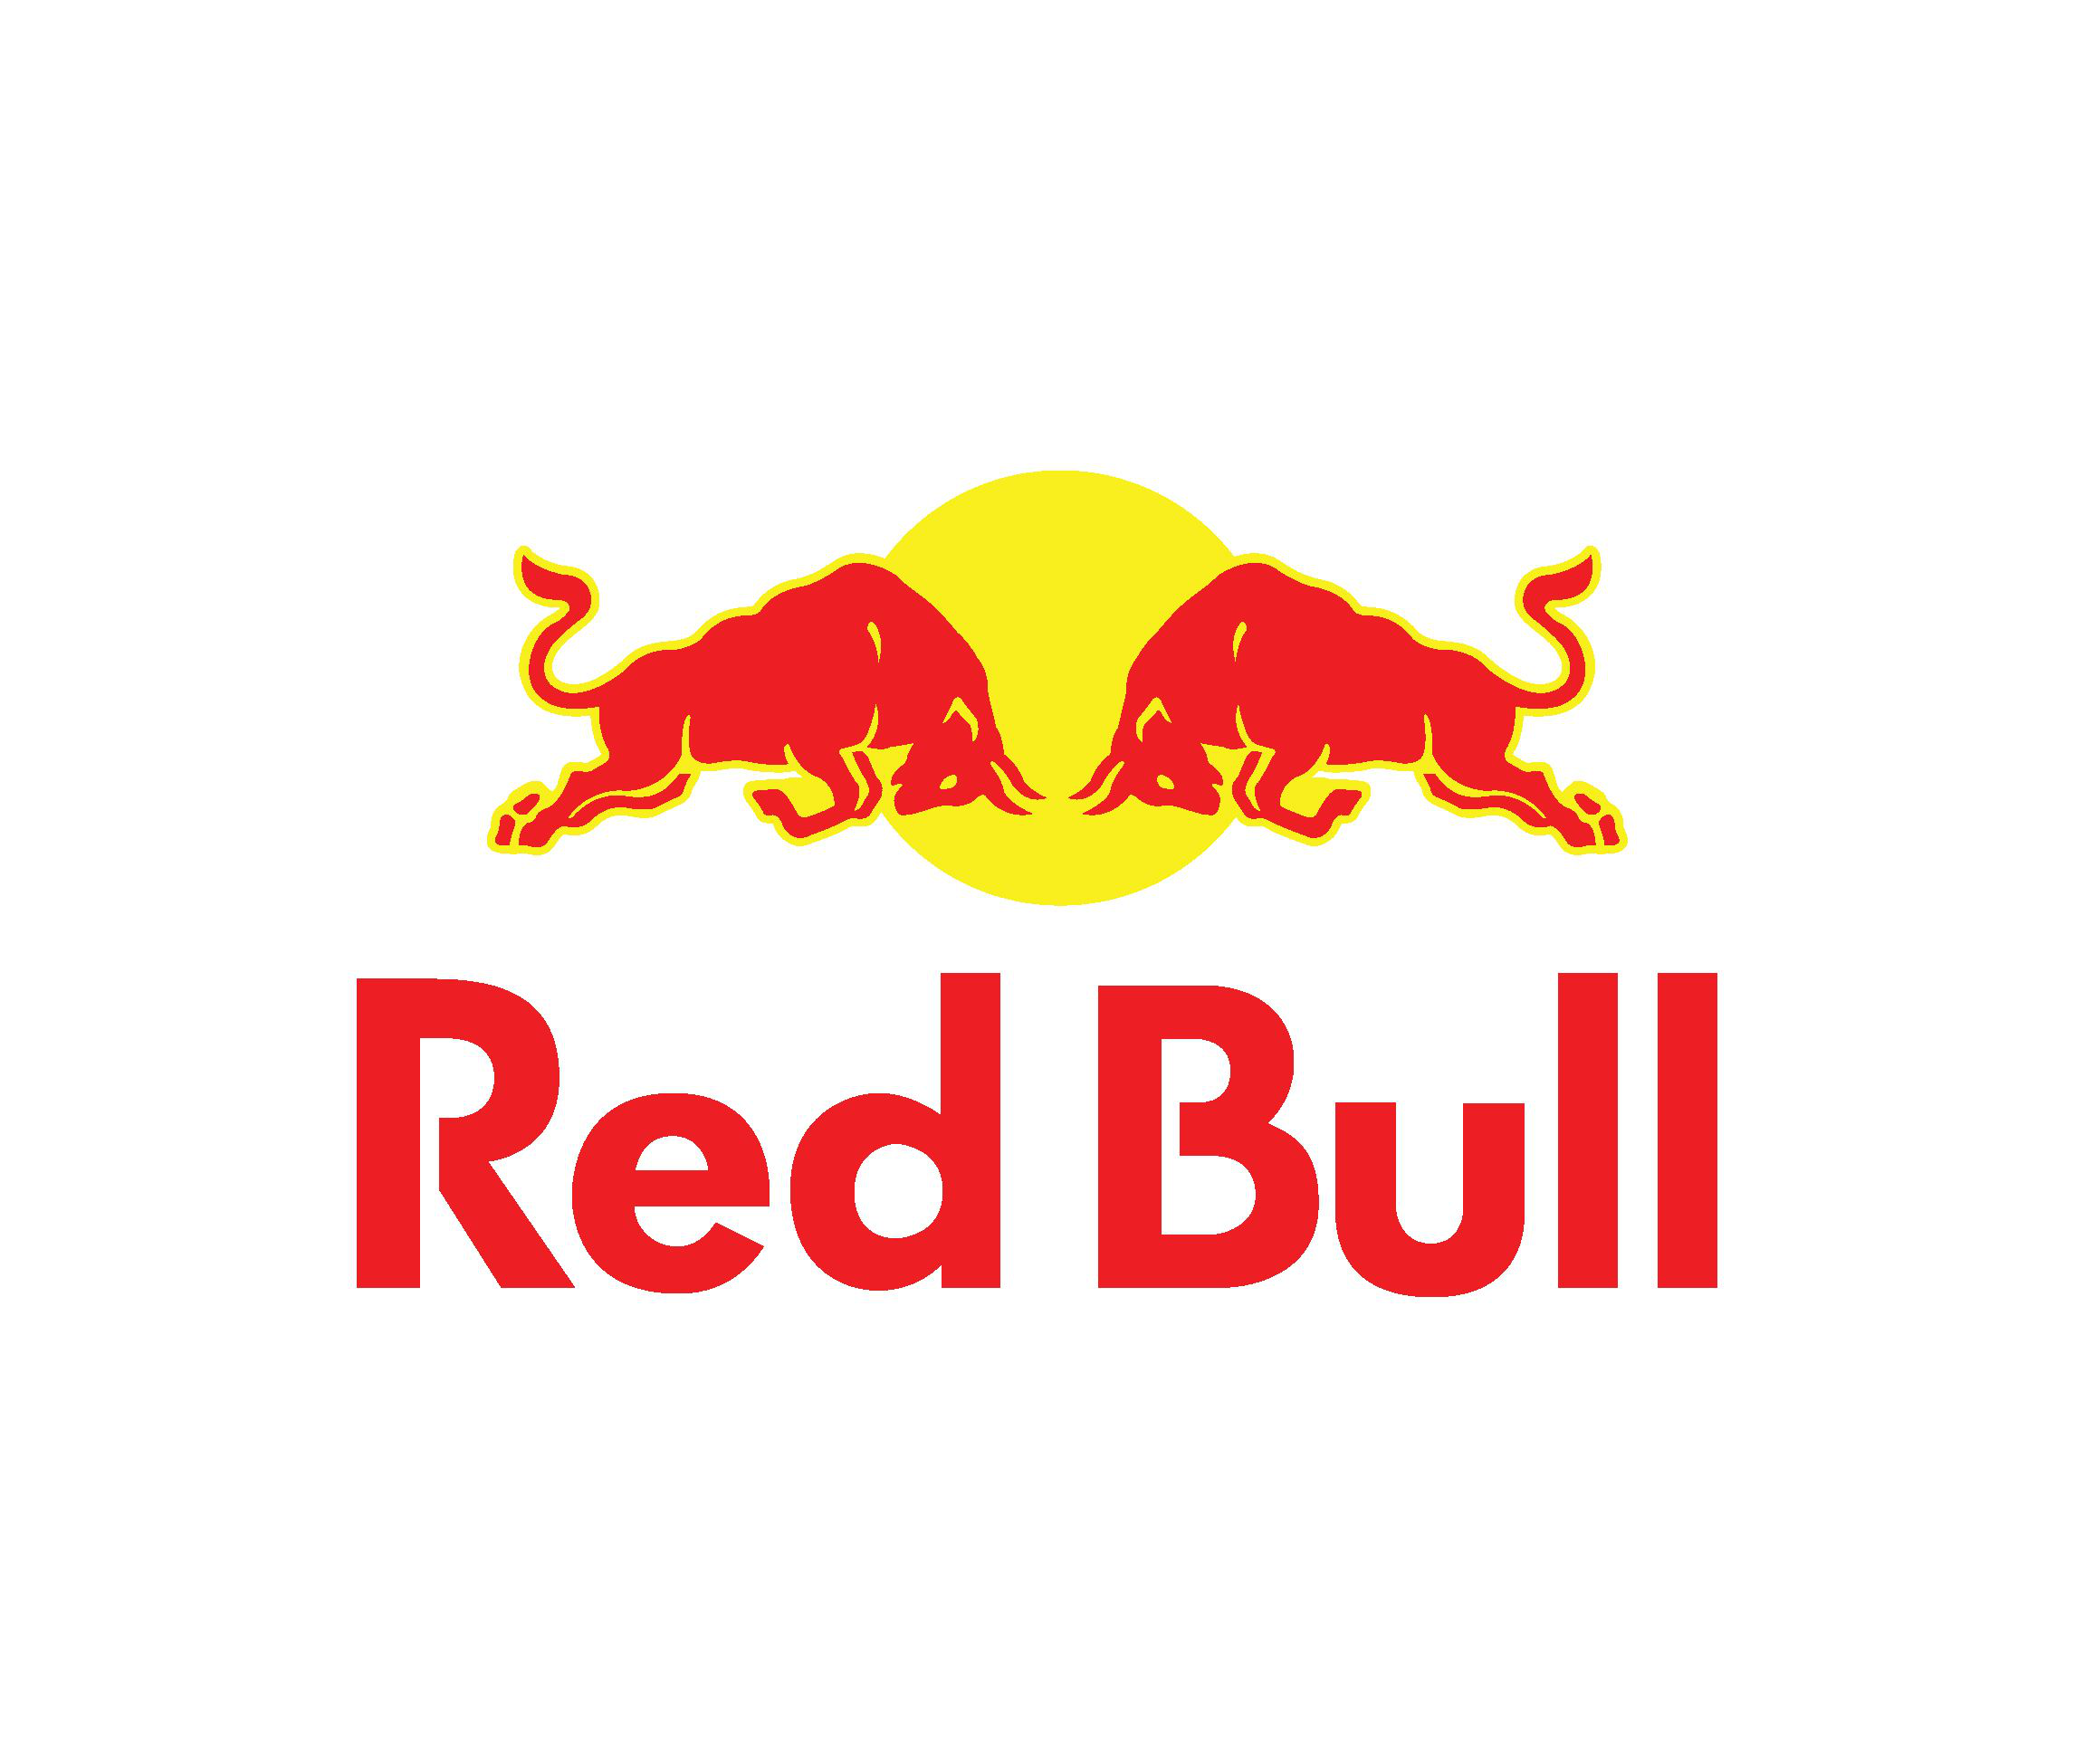 工商资料显示,红牛维他命饮料公司于1998年9月30日在北京设立, 营业